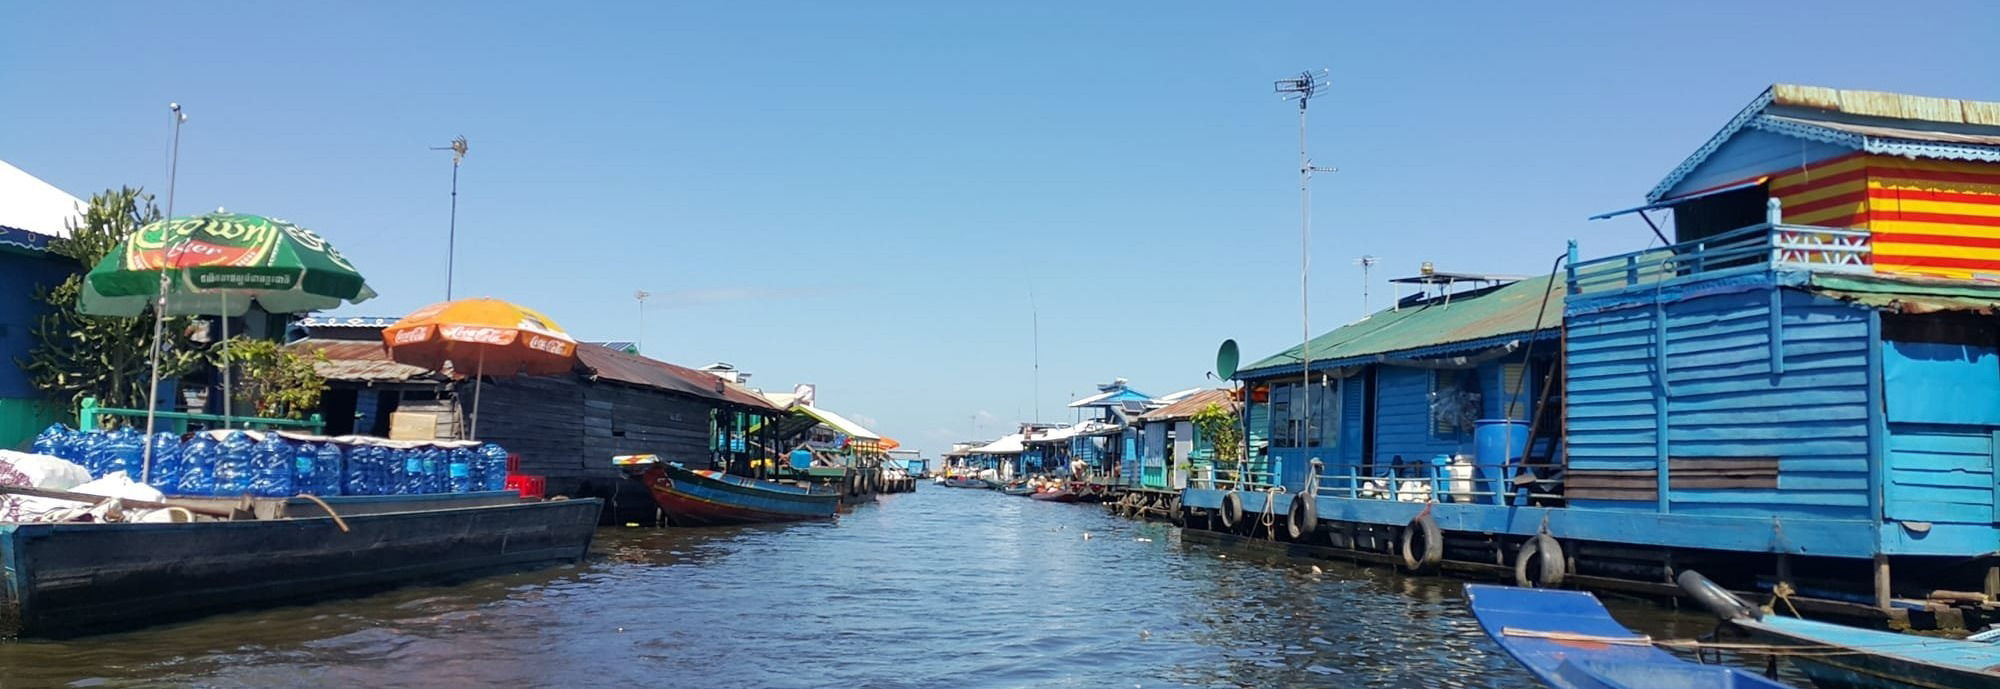 Le village flottant de Kampong Loung